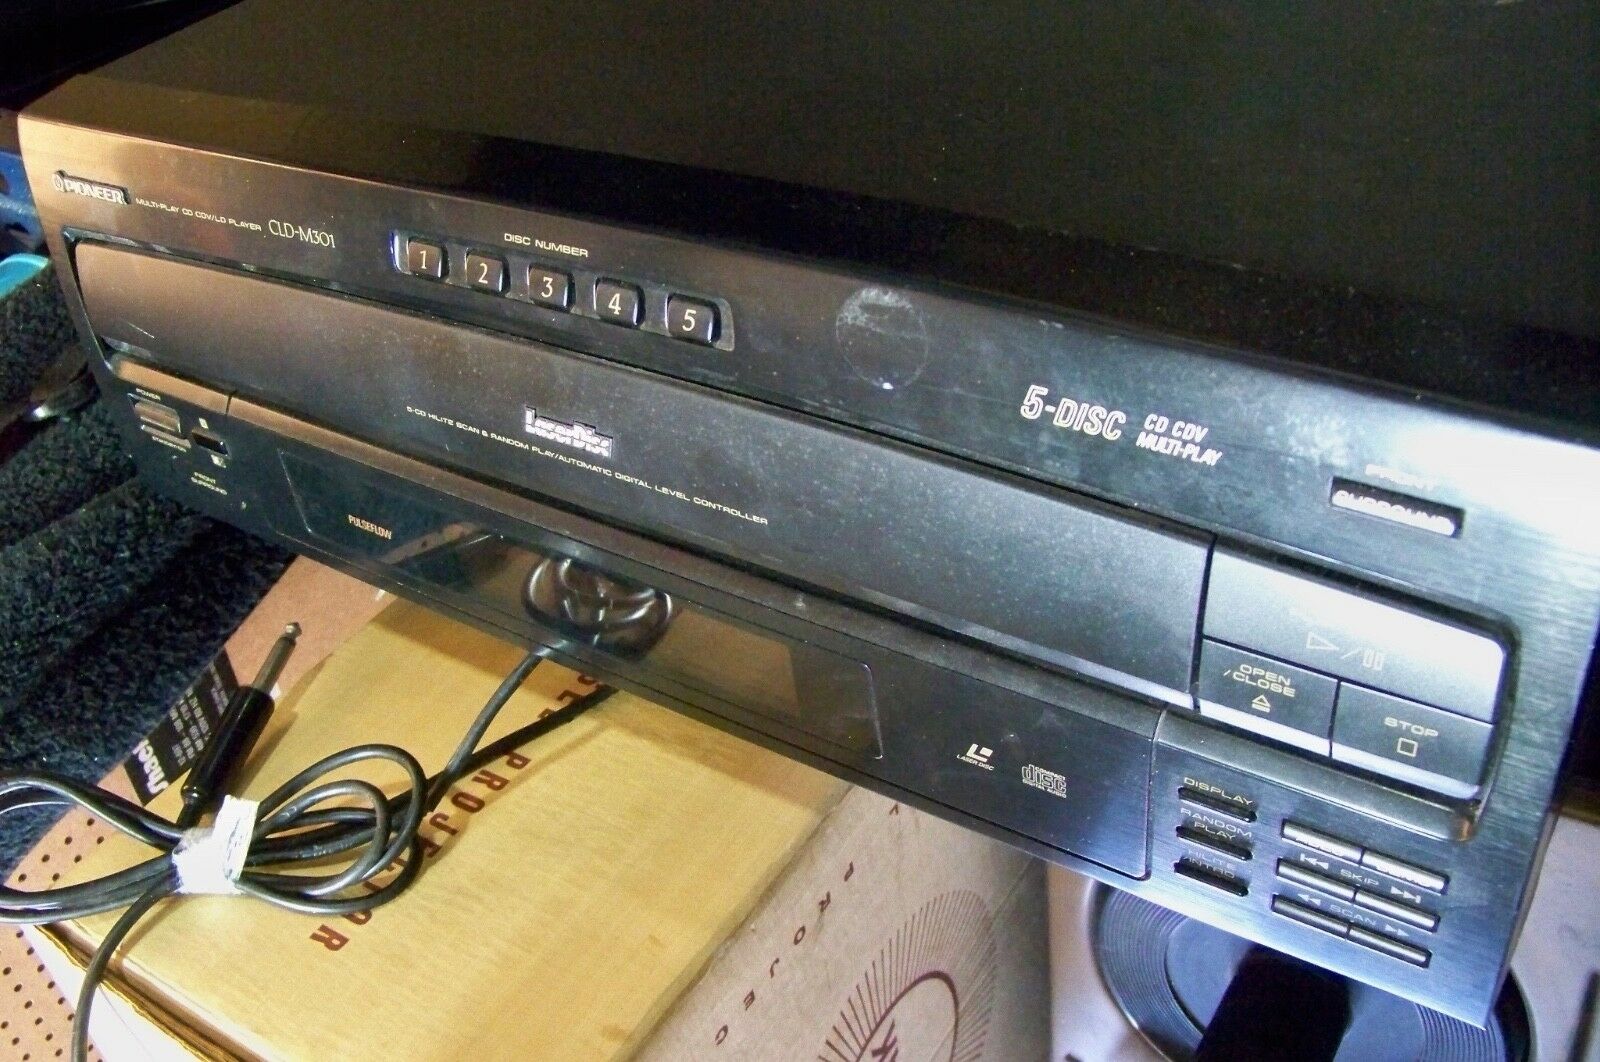 Vintage 1992 Pioneer Cld-m301 Cd Laserdisc Player